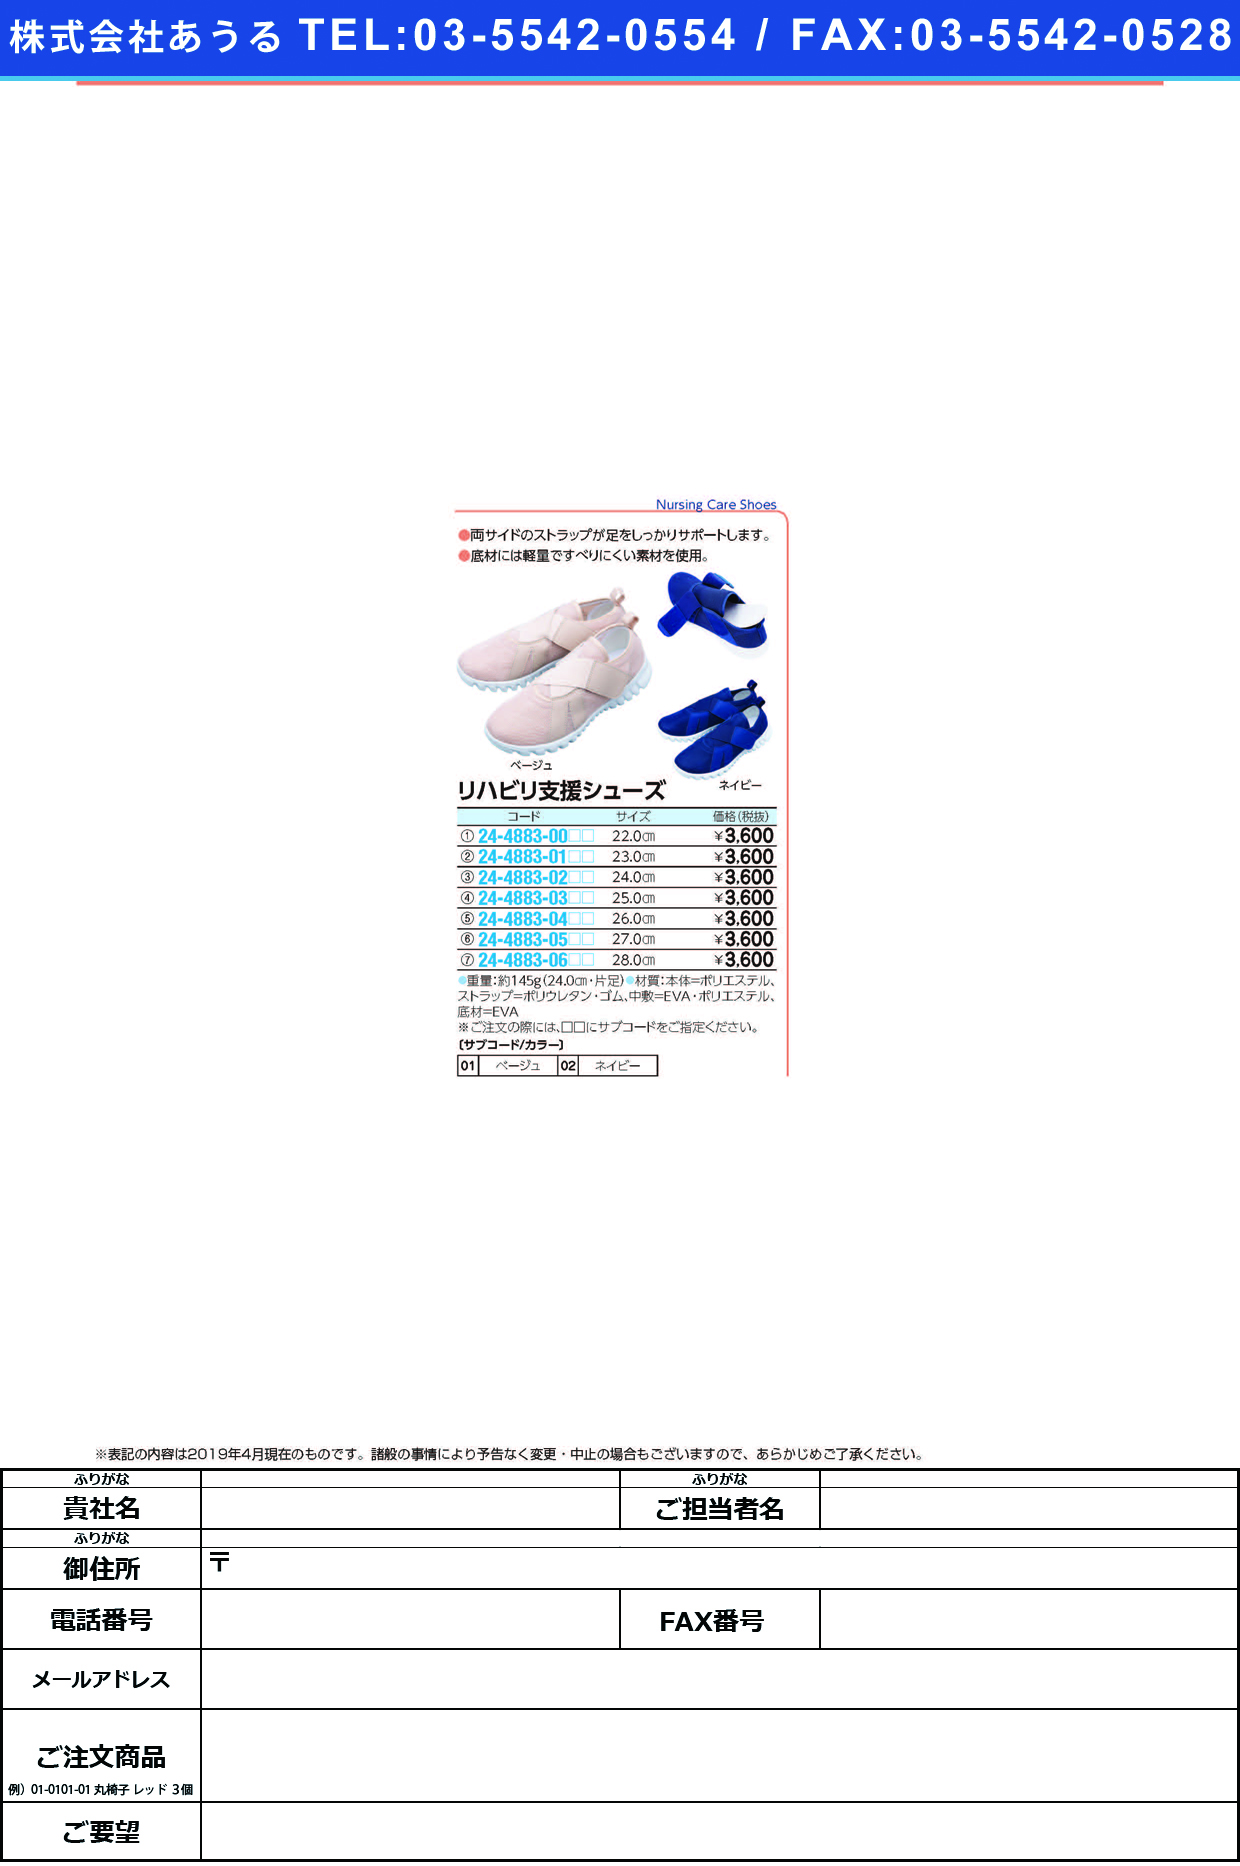 (24-4883-06)リハビリ支援シューズ 28.0CM ﾘﾊﾋﾞﾘｼｴﾝｼｭｰｽﾞ ベージュ【1足単位】【2019年カタログ商品】